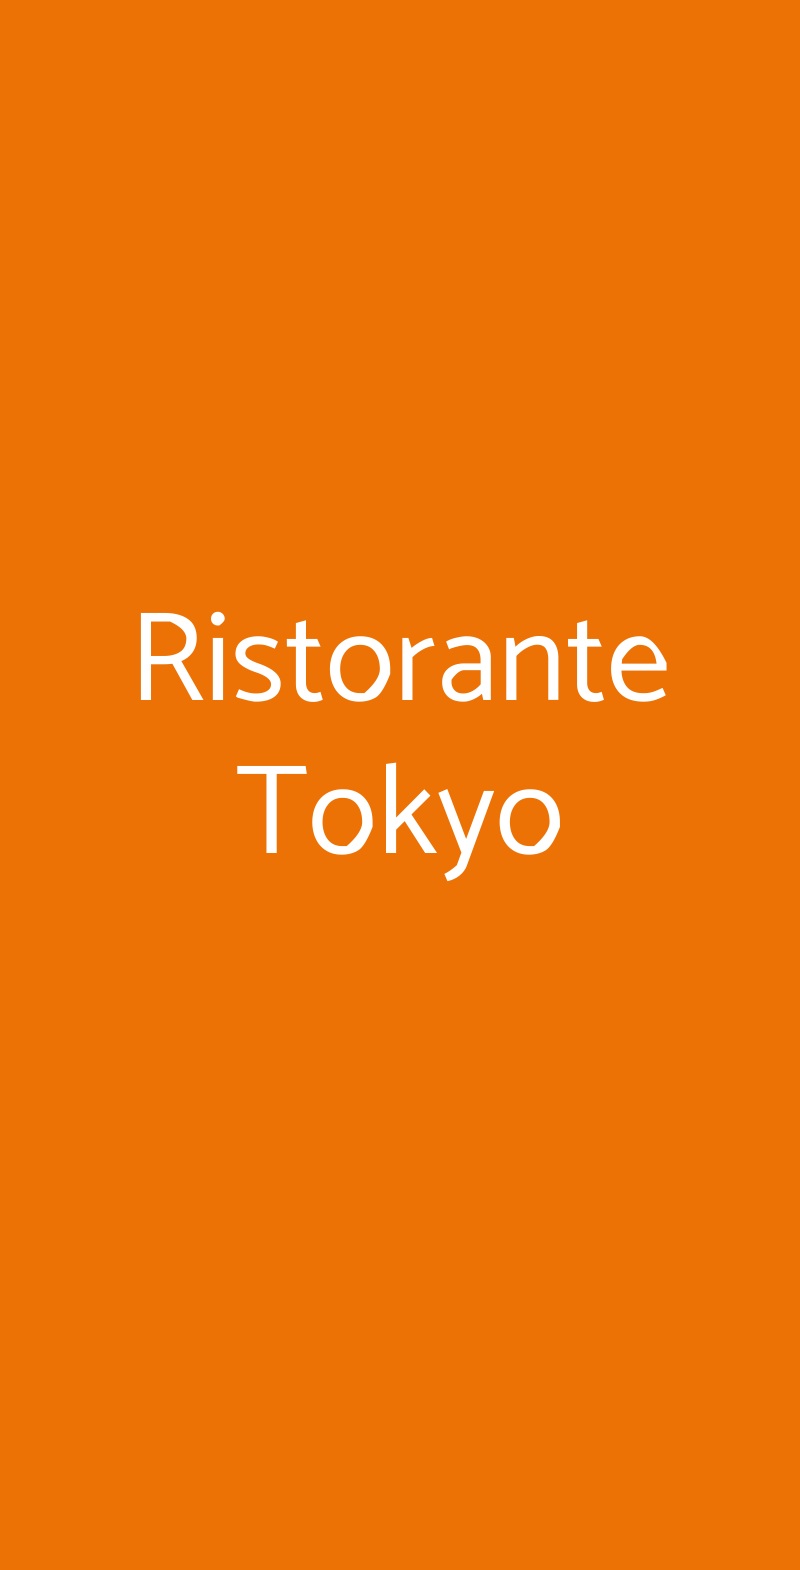 Ristorante Tokyo Trieste menù 1 pagina